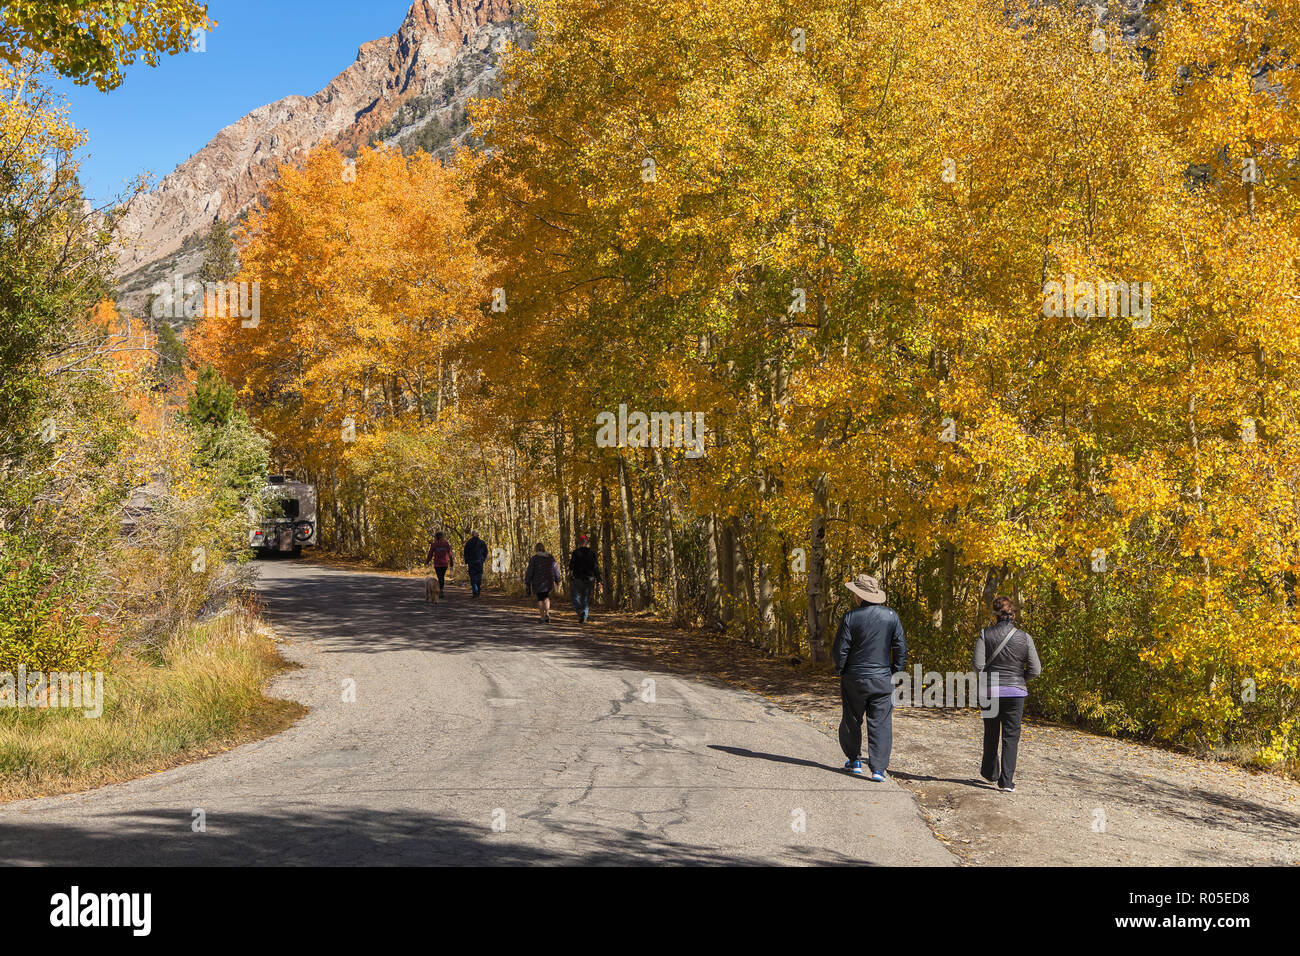 Les visiteurs marchent le long de la route par le lac Sabrina, Bishop, California, USA, pour profiter de l'automne feuillage pic de trembles. Banque D'Images